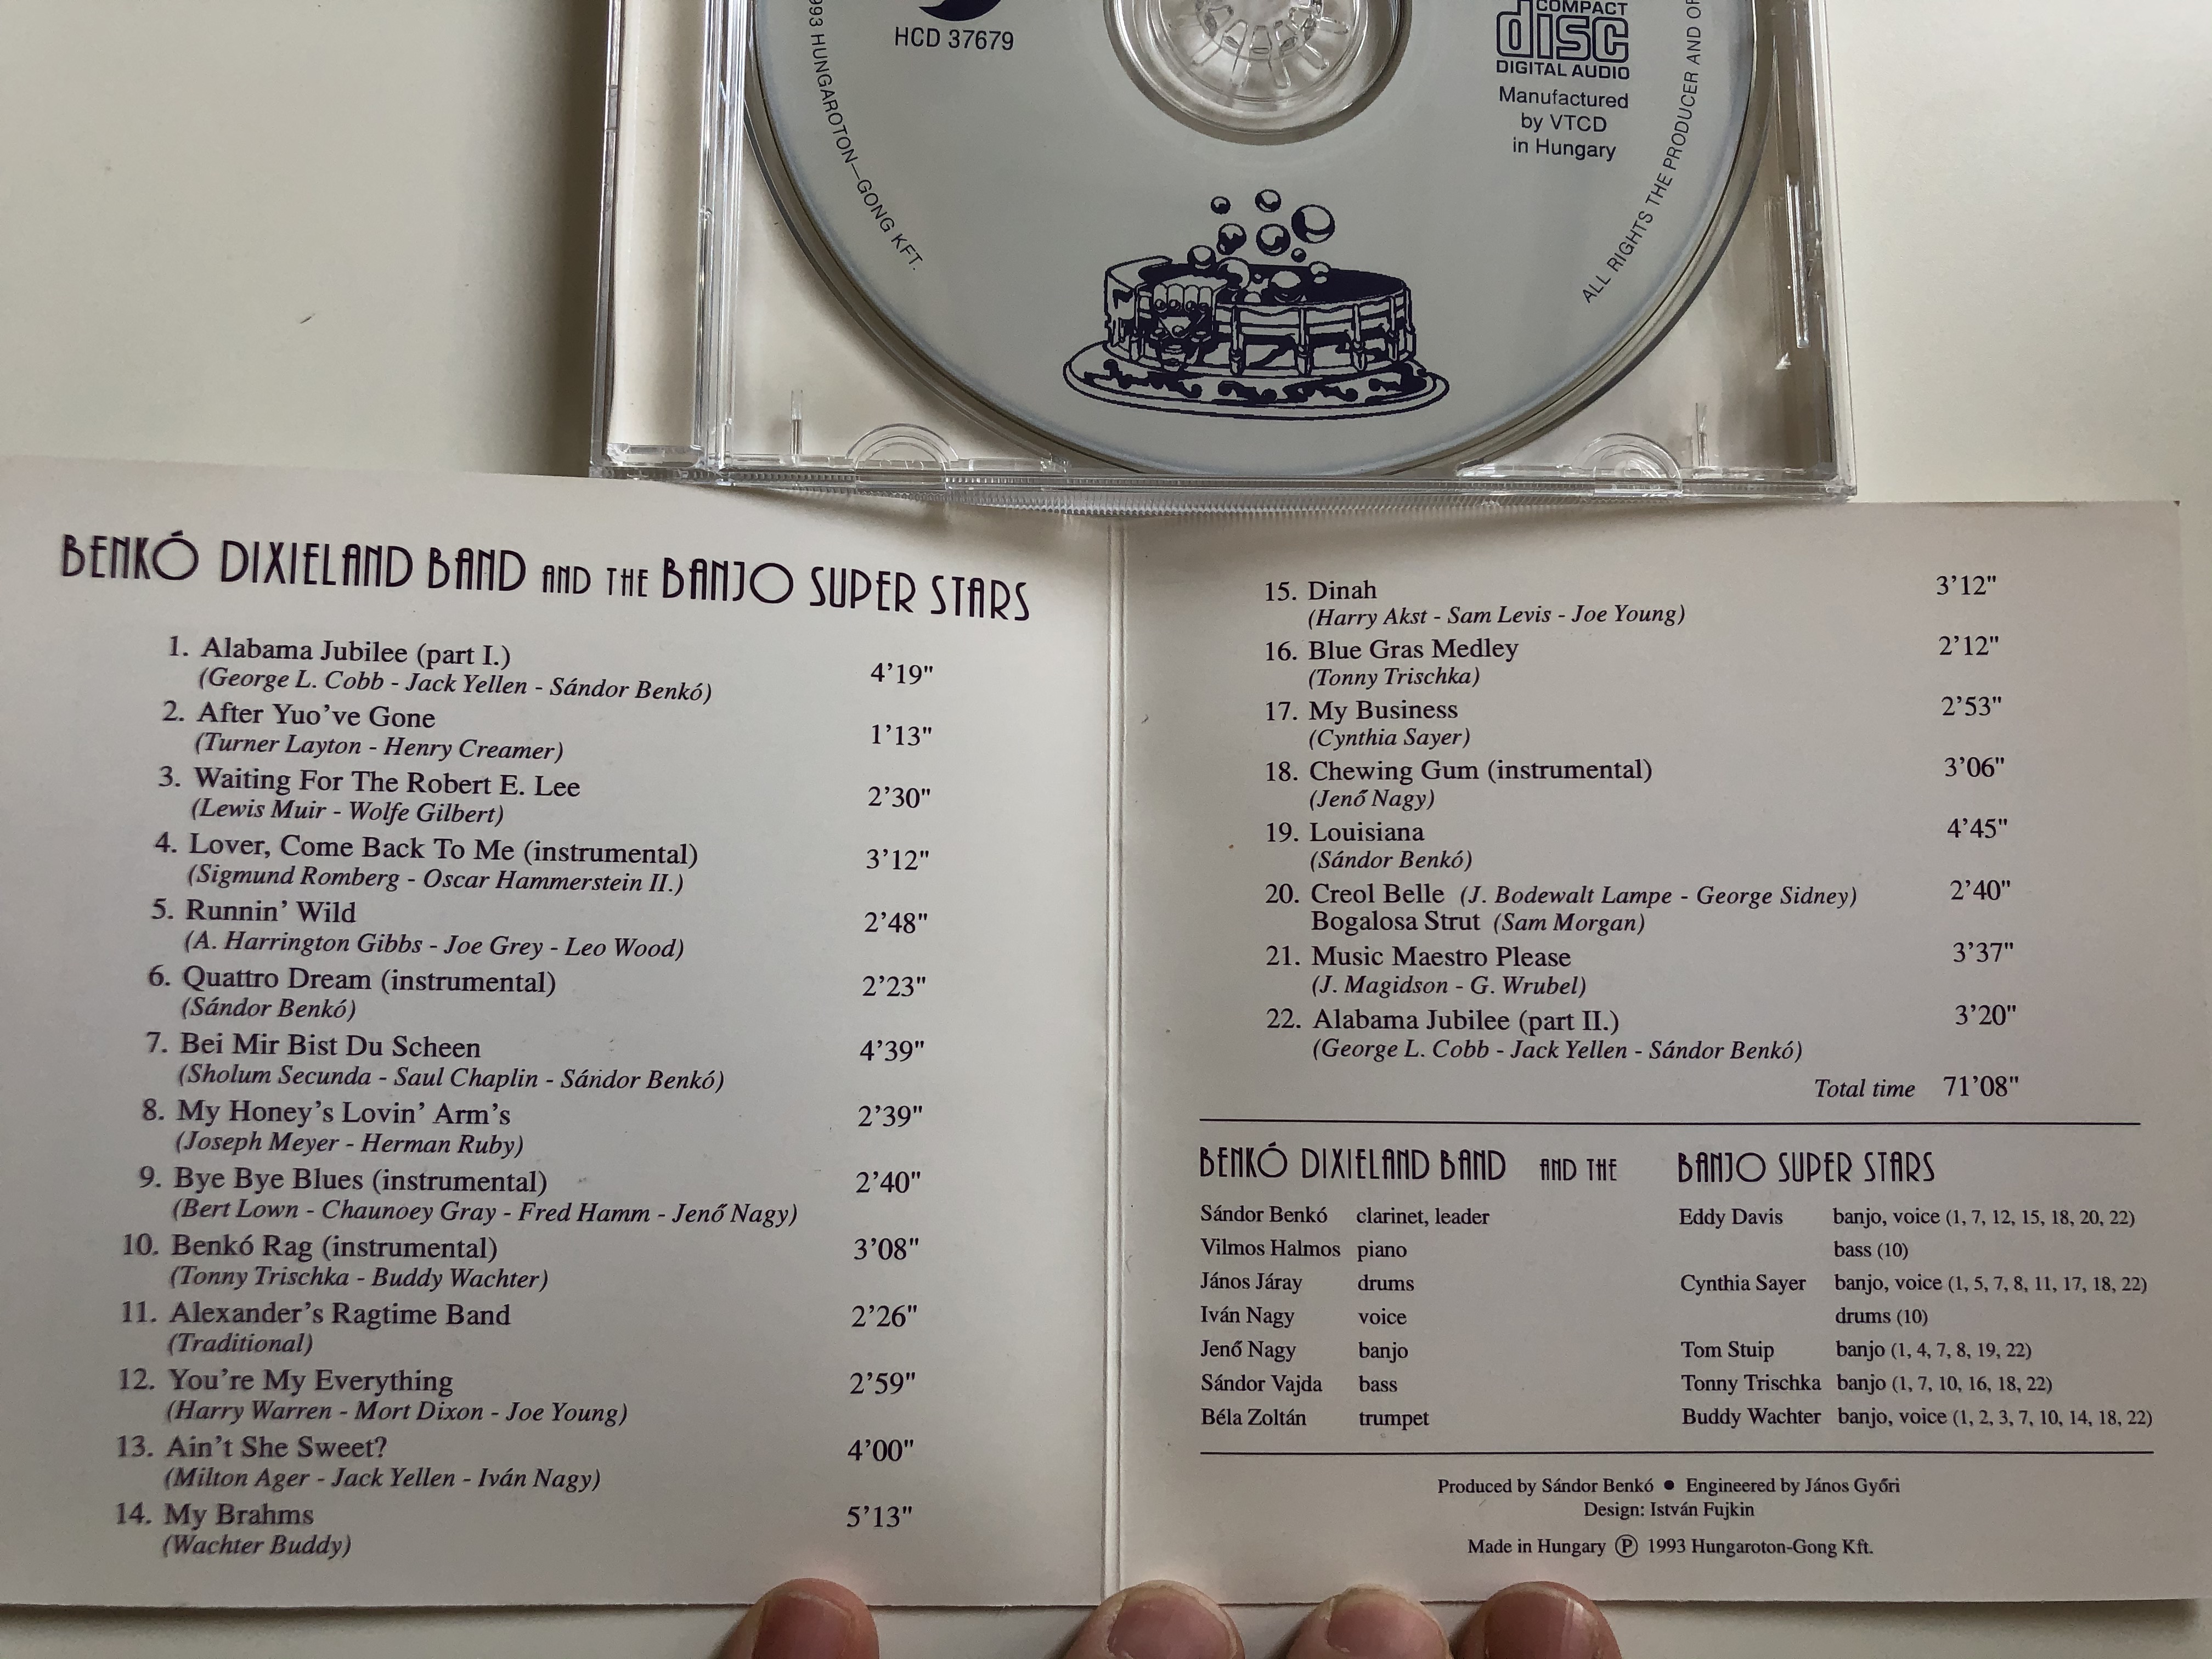 benk-dixieland-band-and-the-banjo-super-stars-gong-audio-cd-1993-hcd-37679-2-.jpg